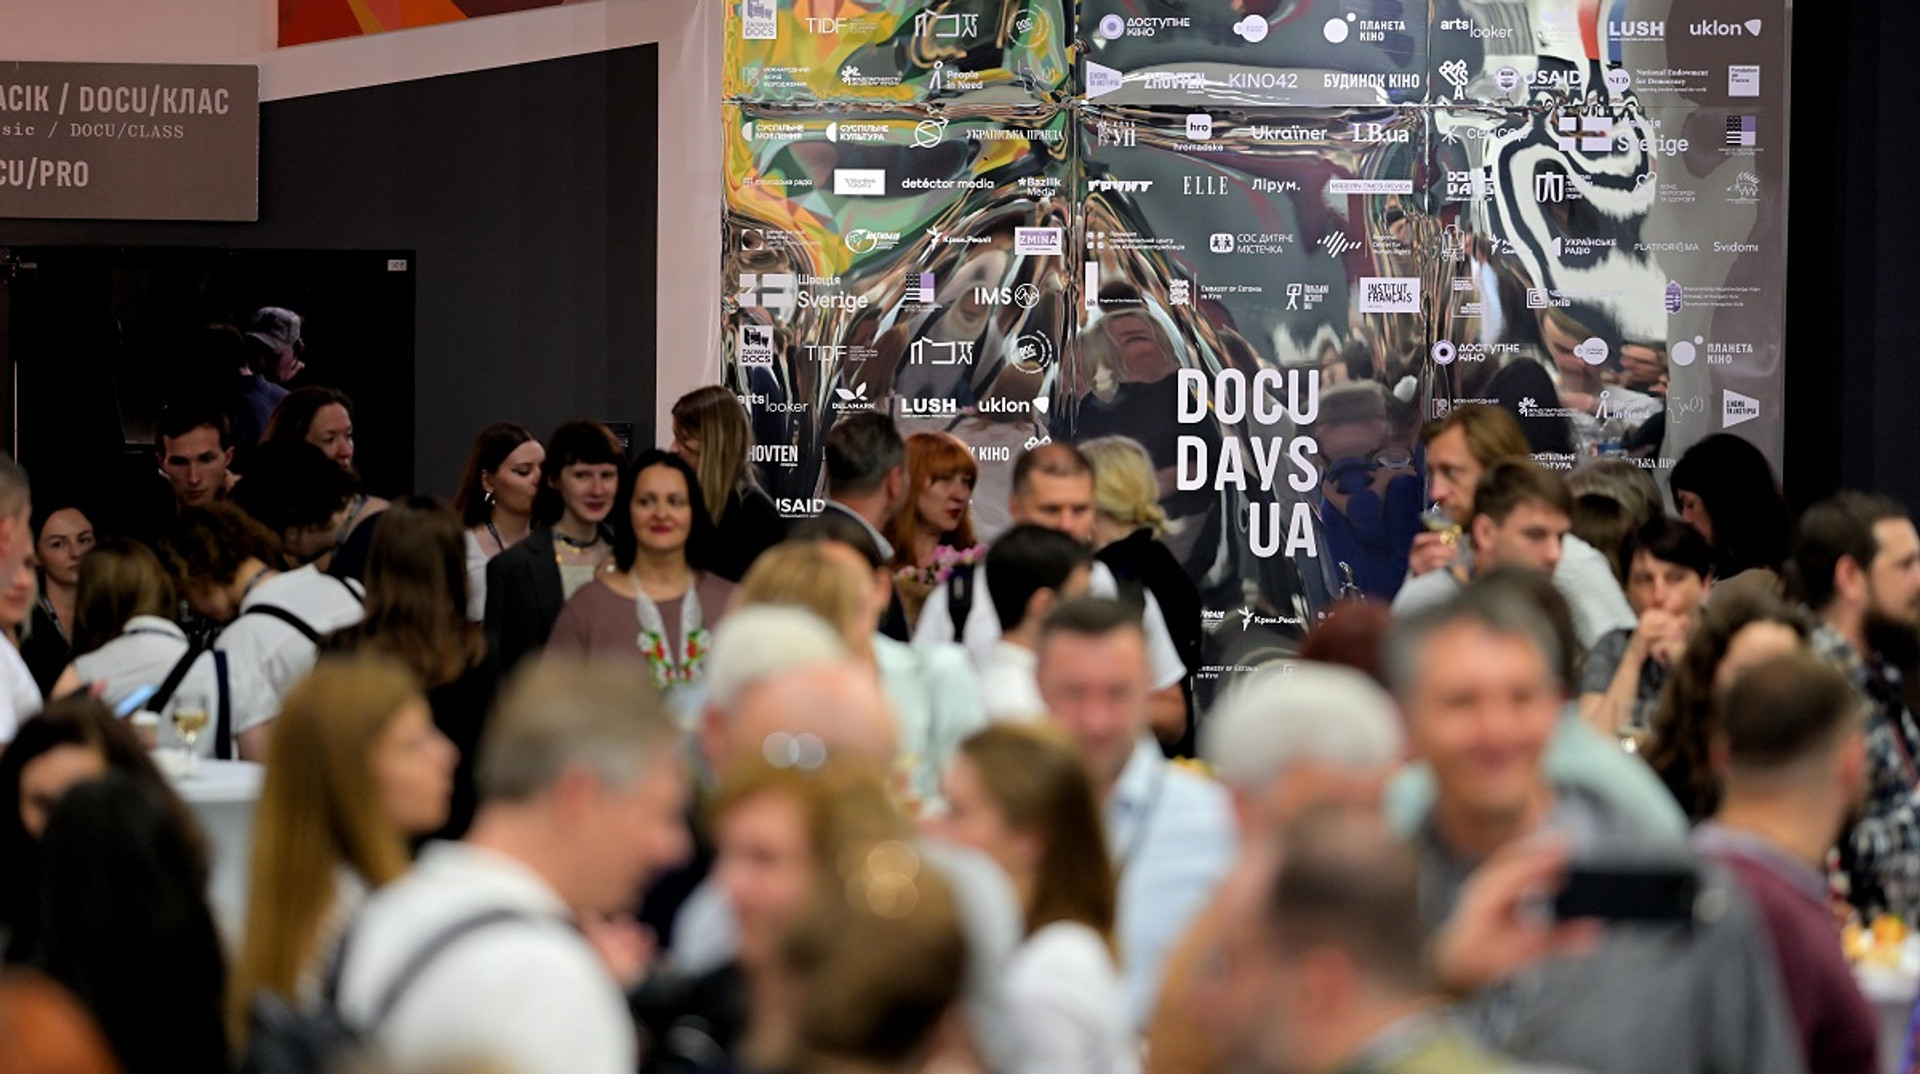 Дискусії про документалістику, донати та акція підтримки: як у Києві відкрився фестиваль Docudays UA